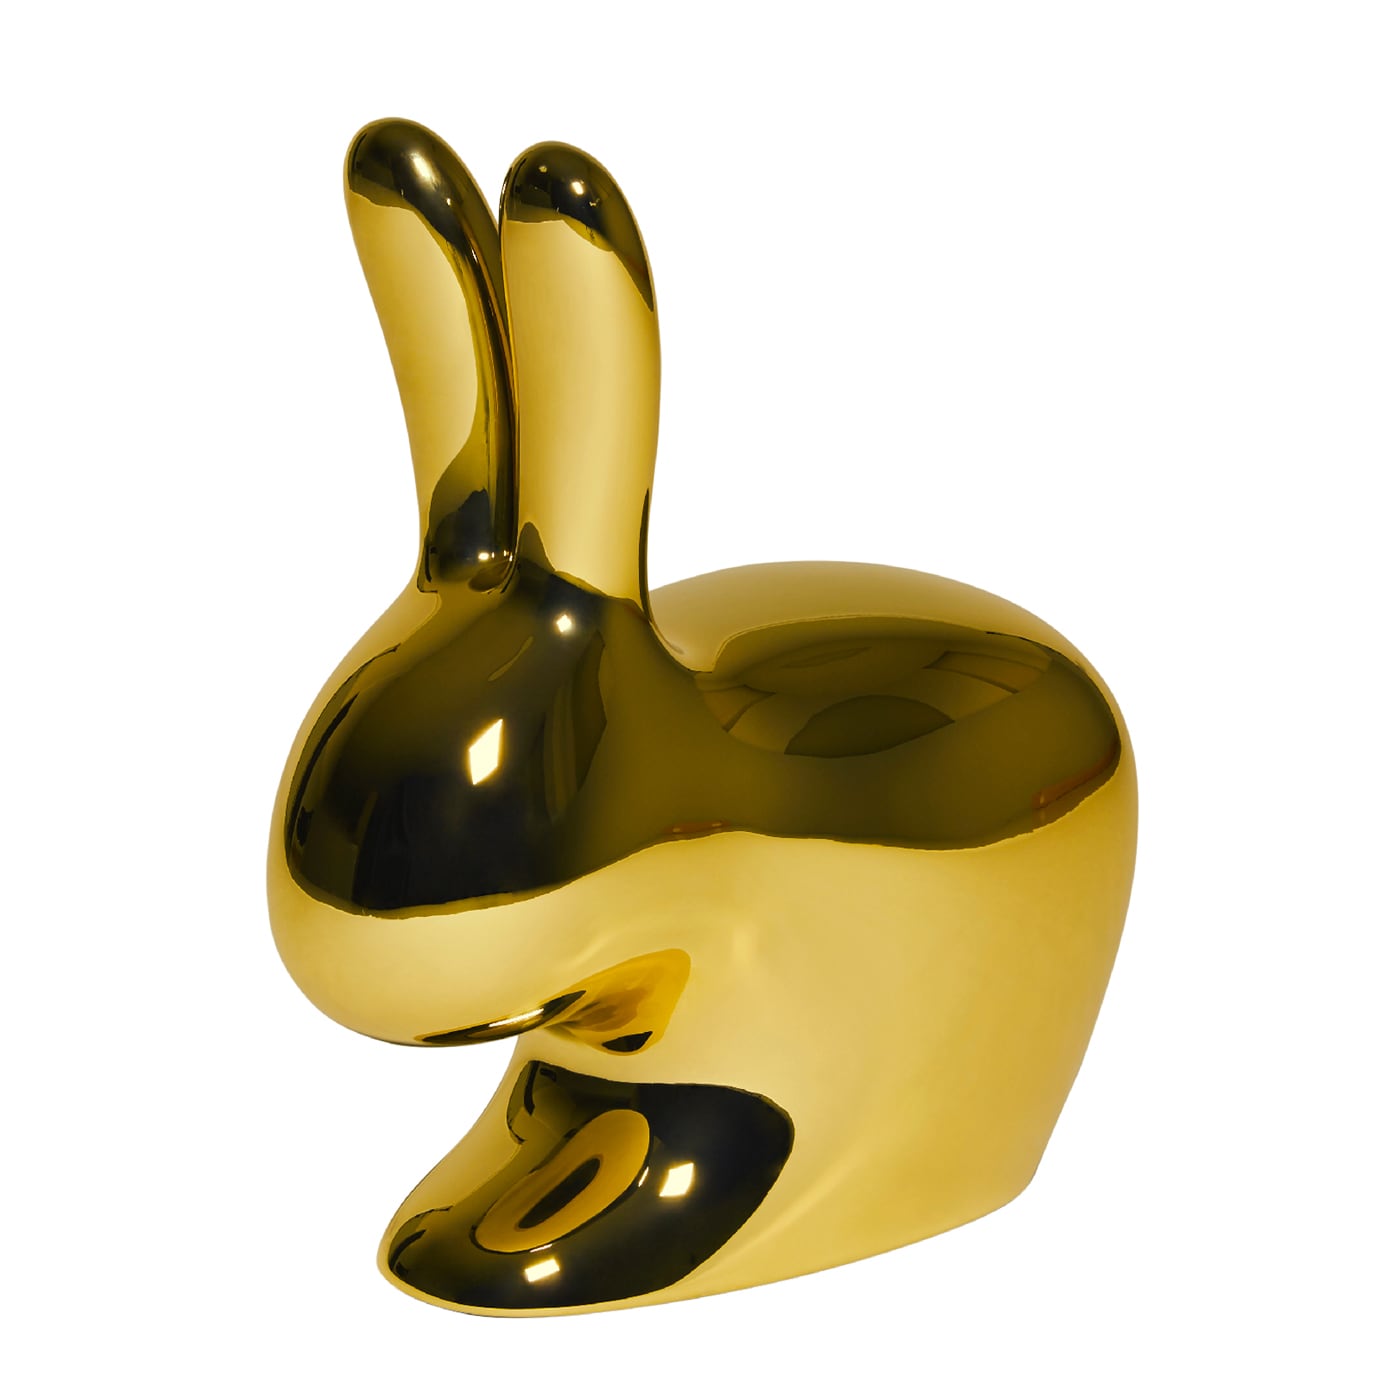 Qeeboo Rabbit Sedia Metal in polietilene